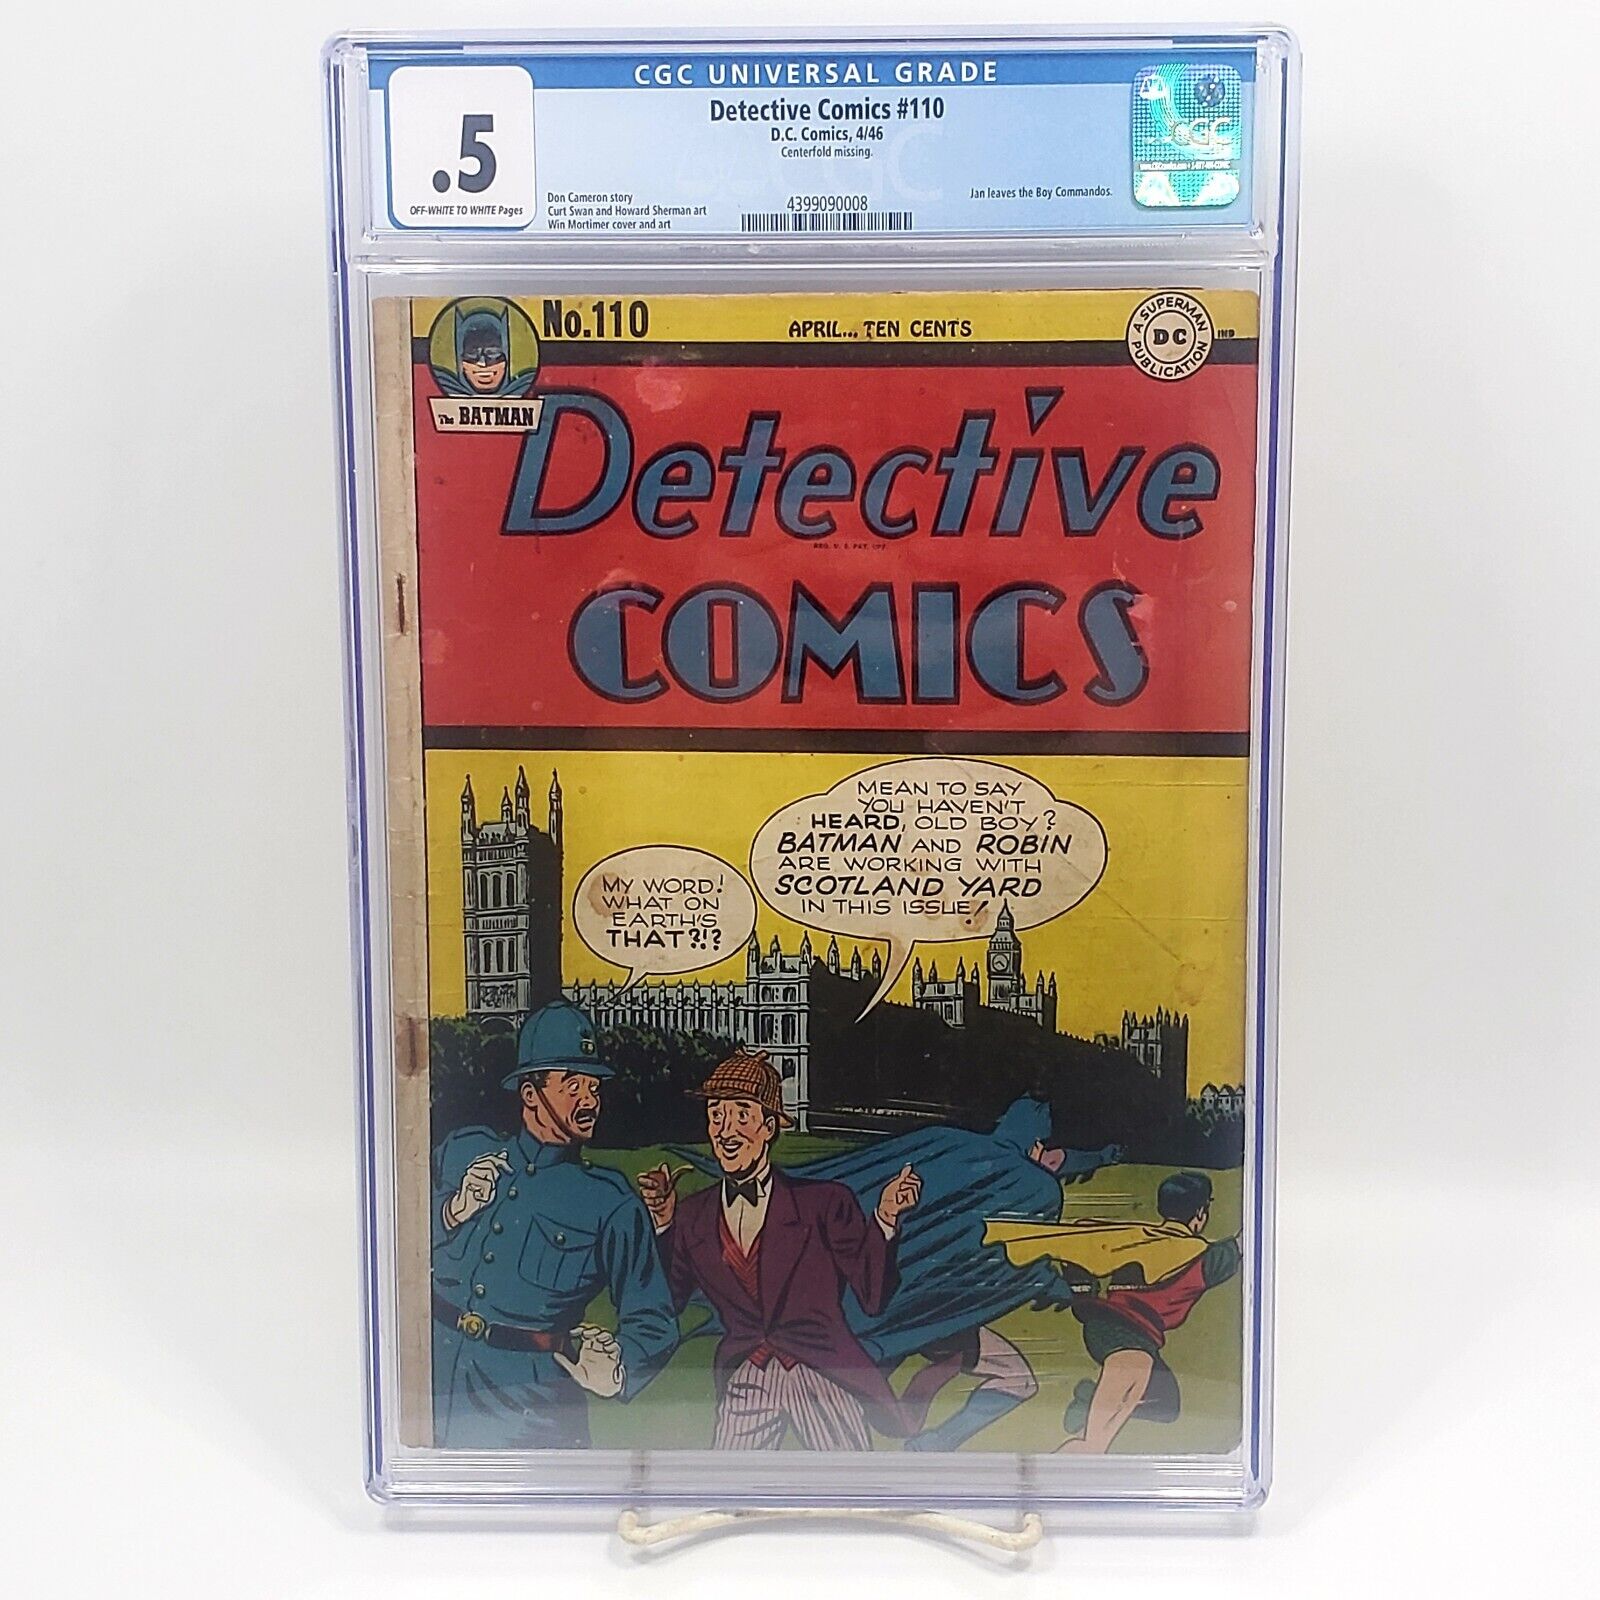 Detective Comics #110 (1946) [D.C. Comics] (CGC: 0.5)